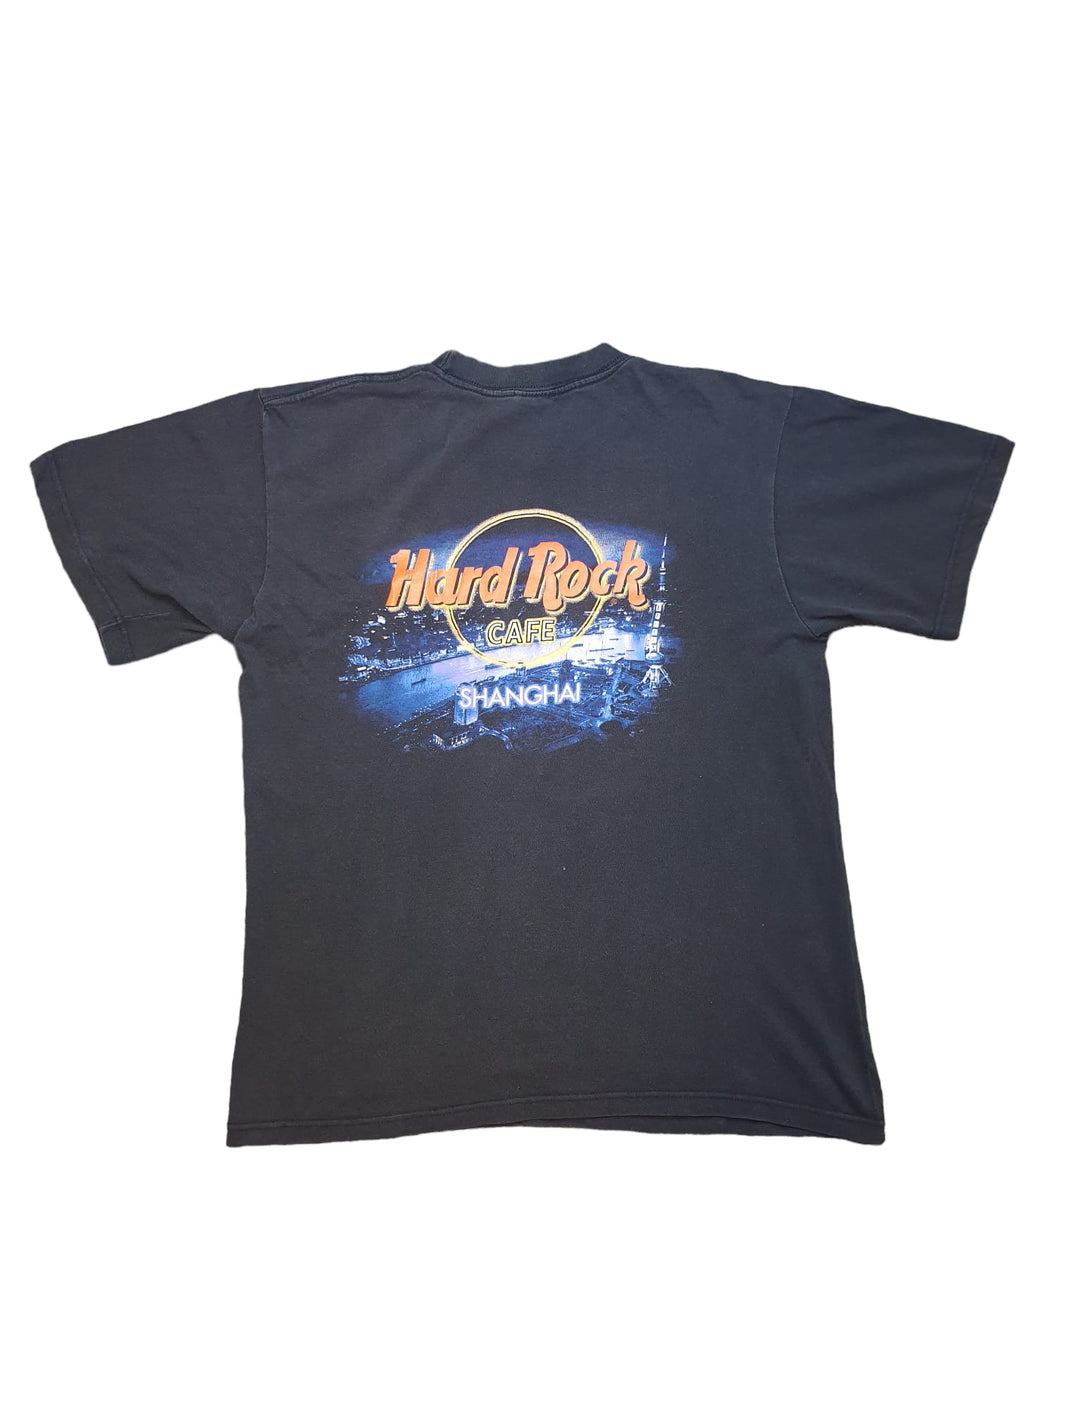 Hard Rock Shanghai Shirt 90s